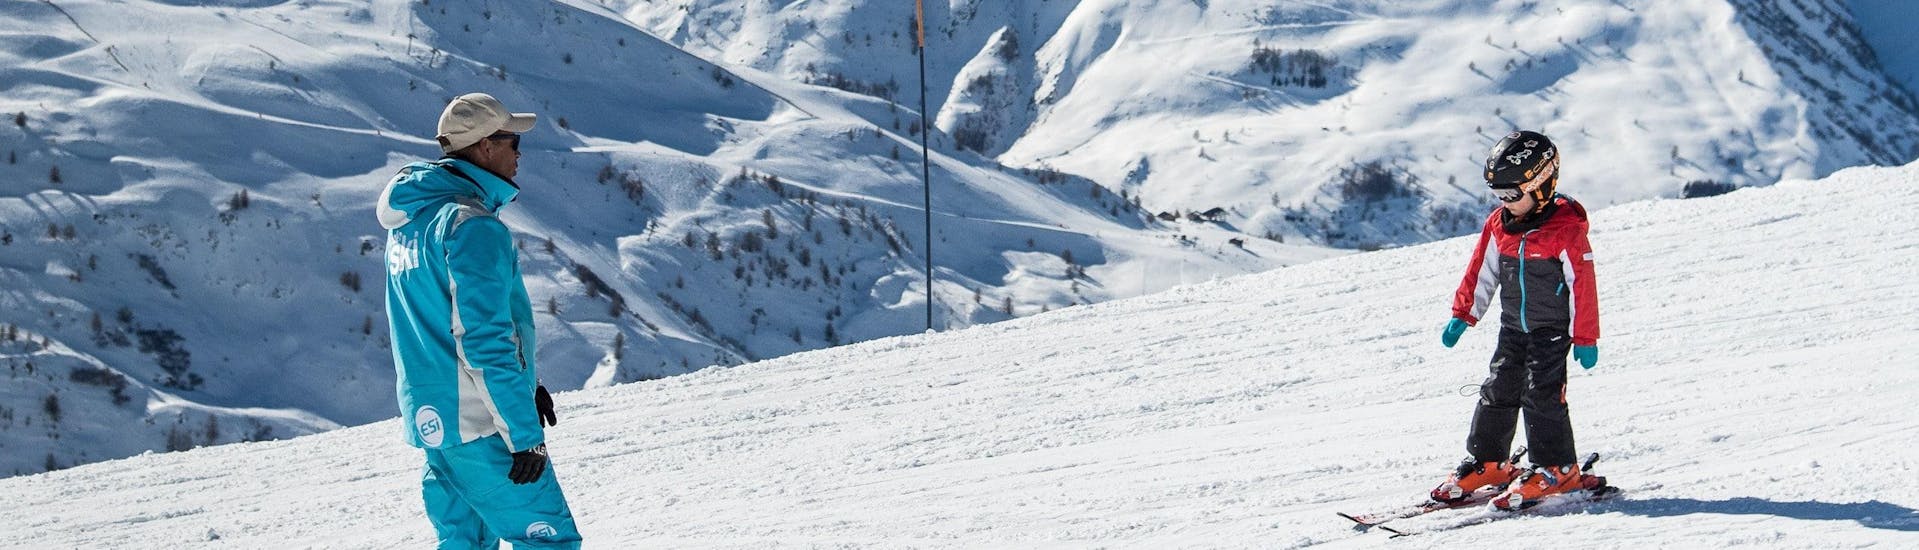 private-ski-lessons-for-kids-february-esi-devoluy-hero